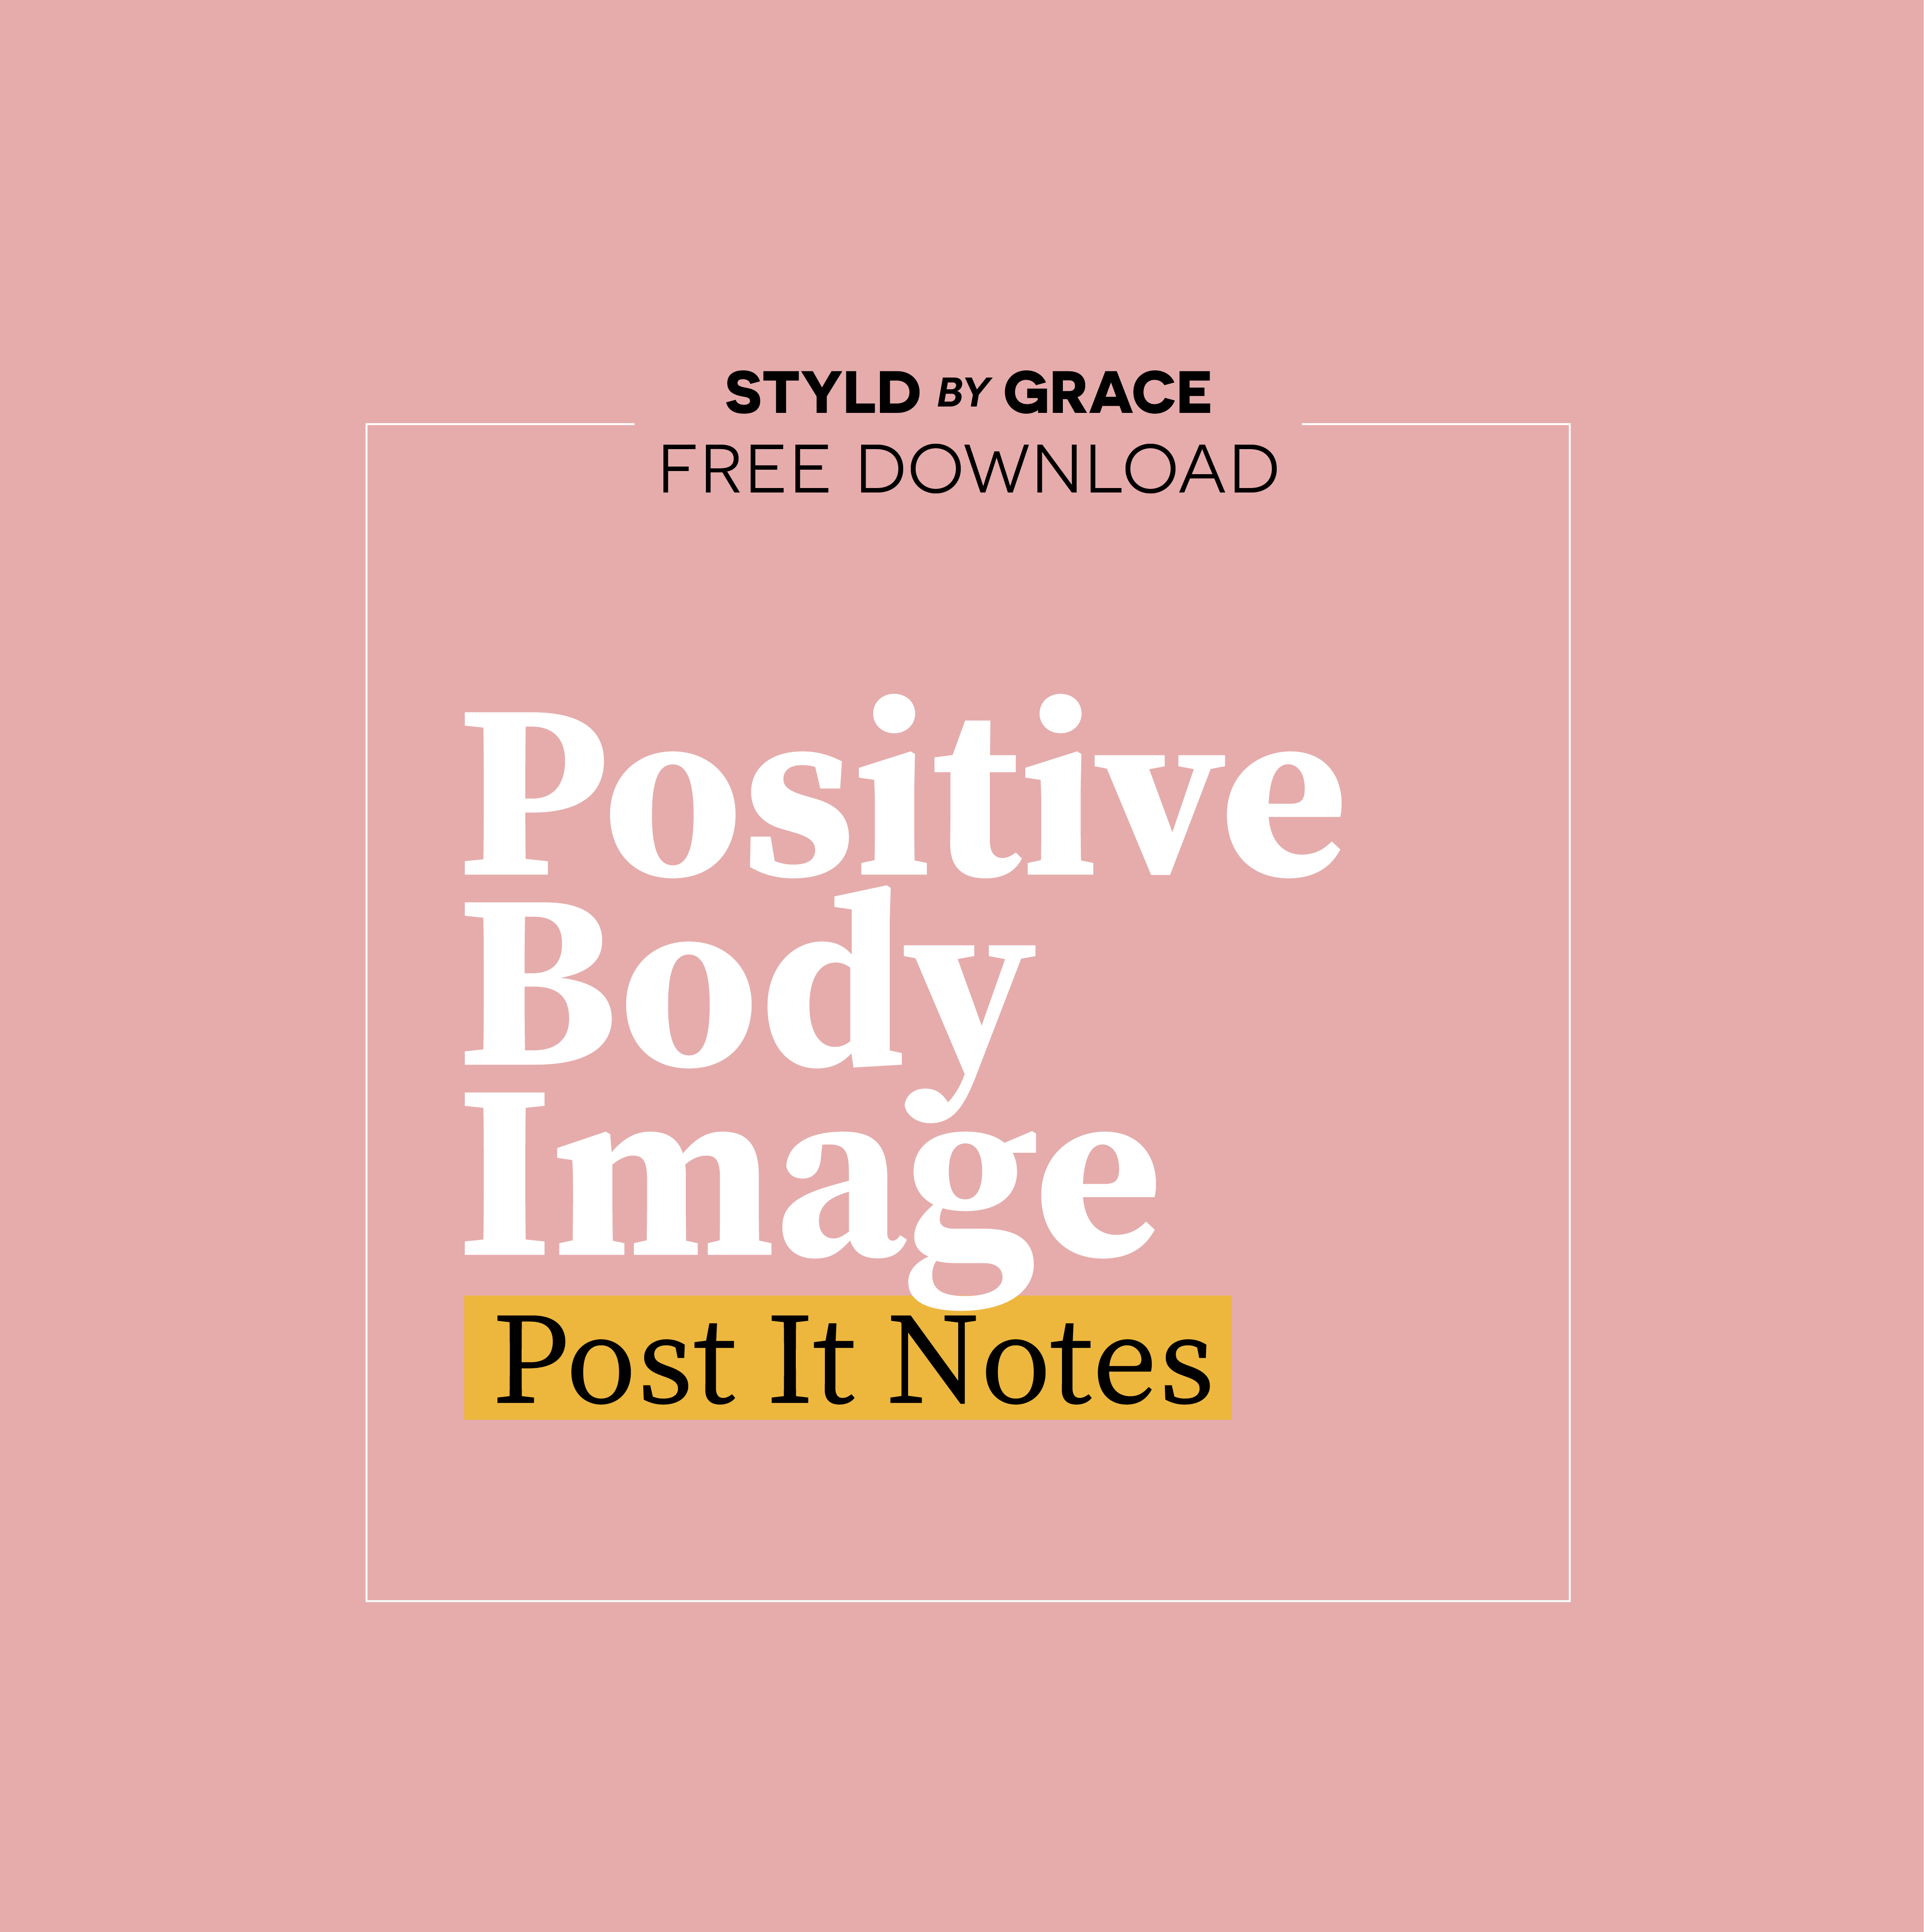 Styldbygrace_PositiveBodyImage_PostIts_CTA